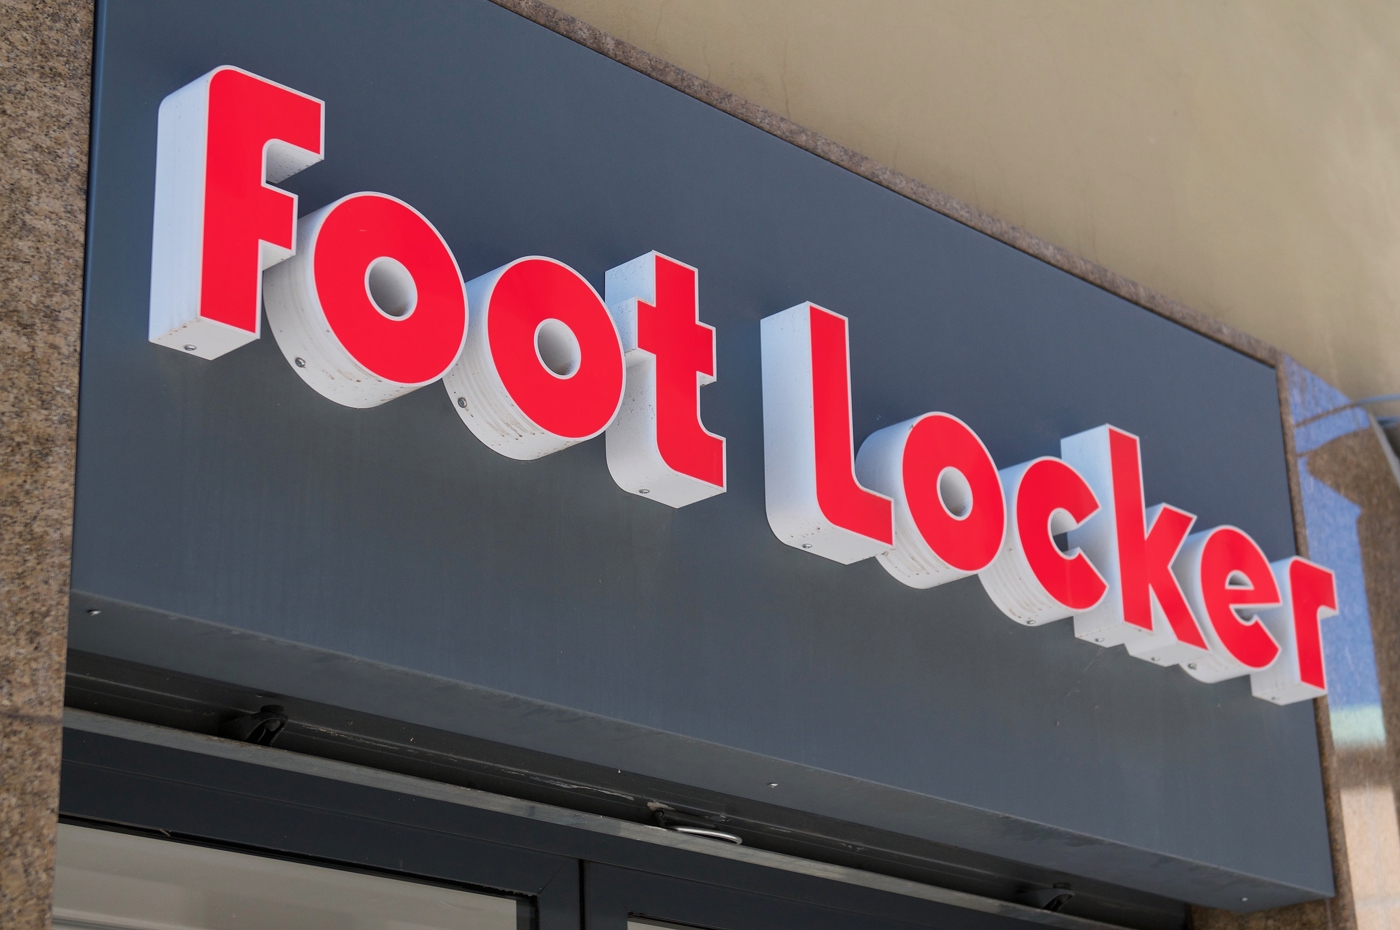 Foot Locker stock, FL stock, FL stock news